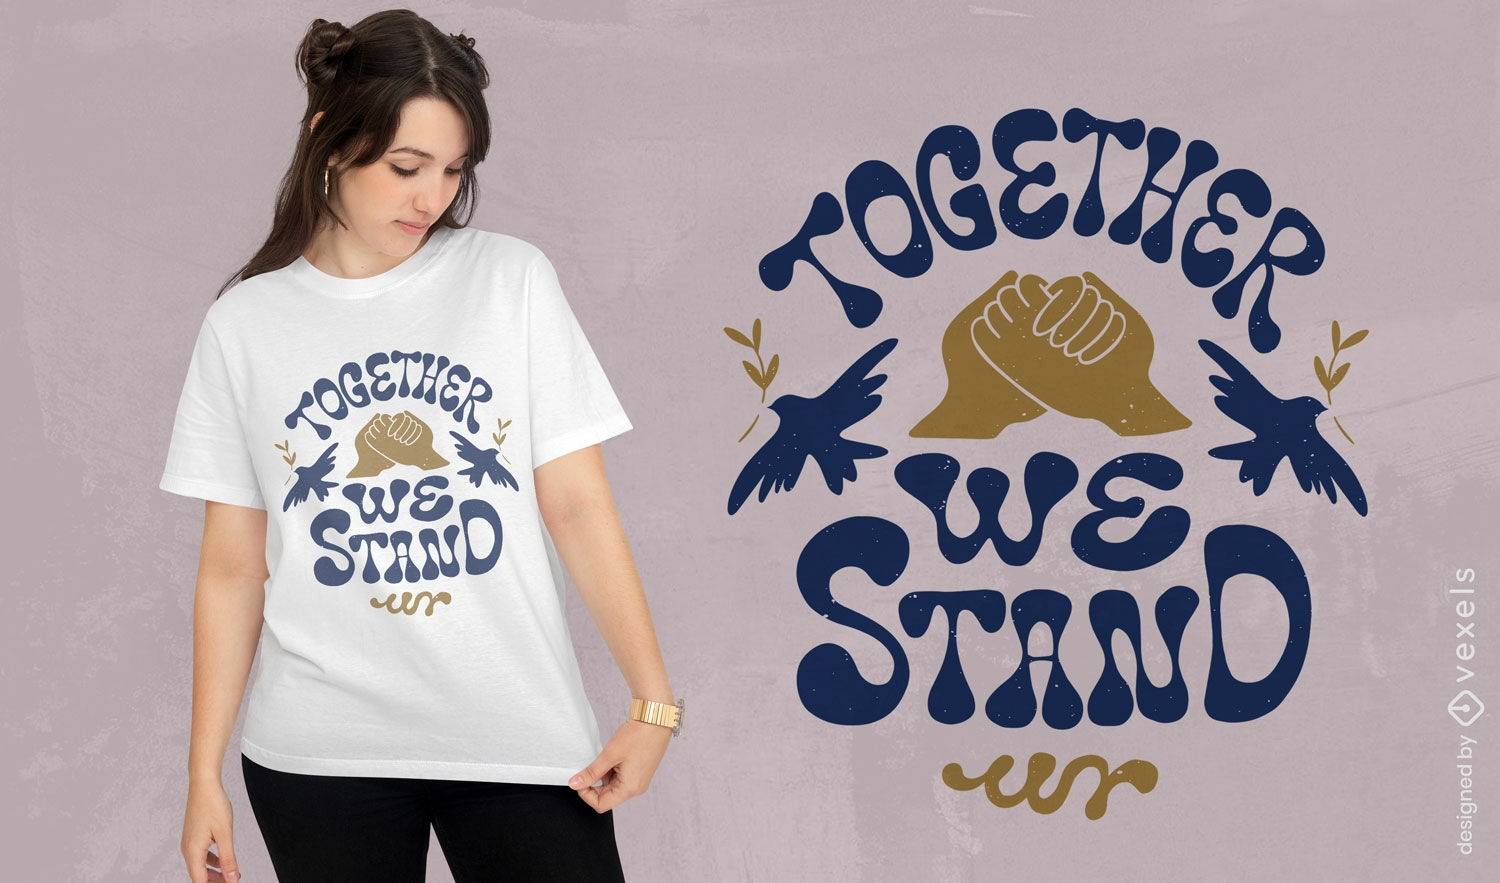 Stehen Sie zusammen Frieden H?nde T-Shirt-Design